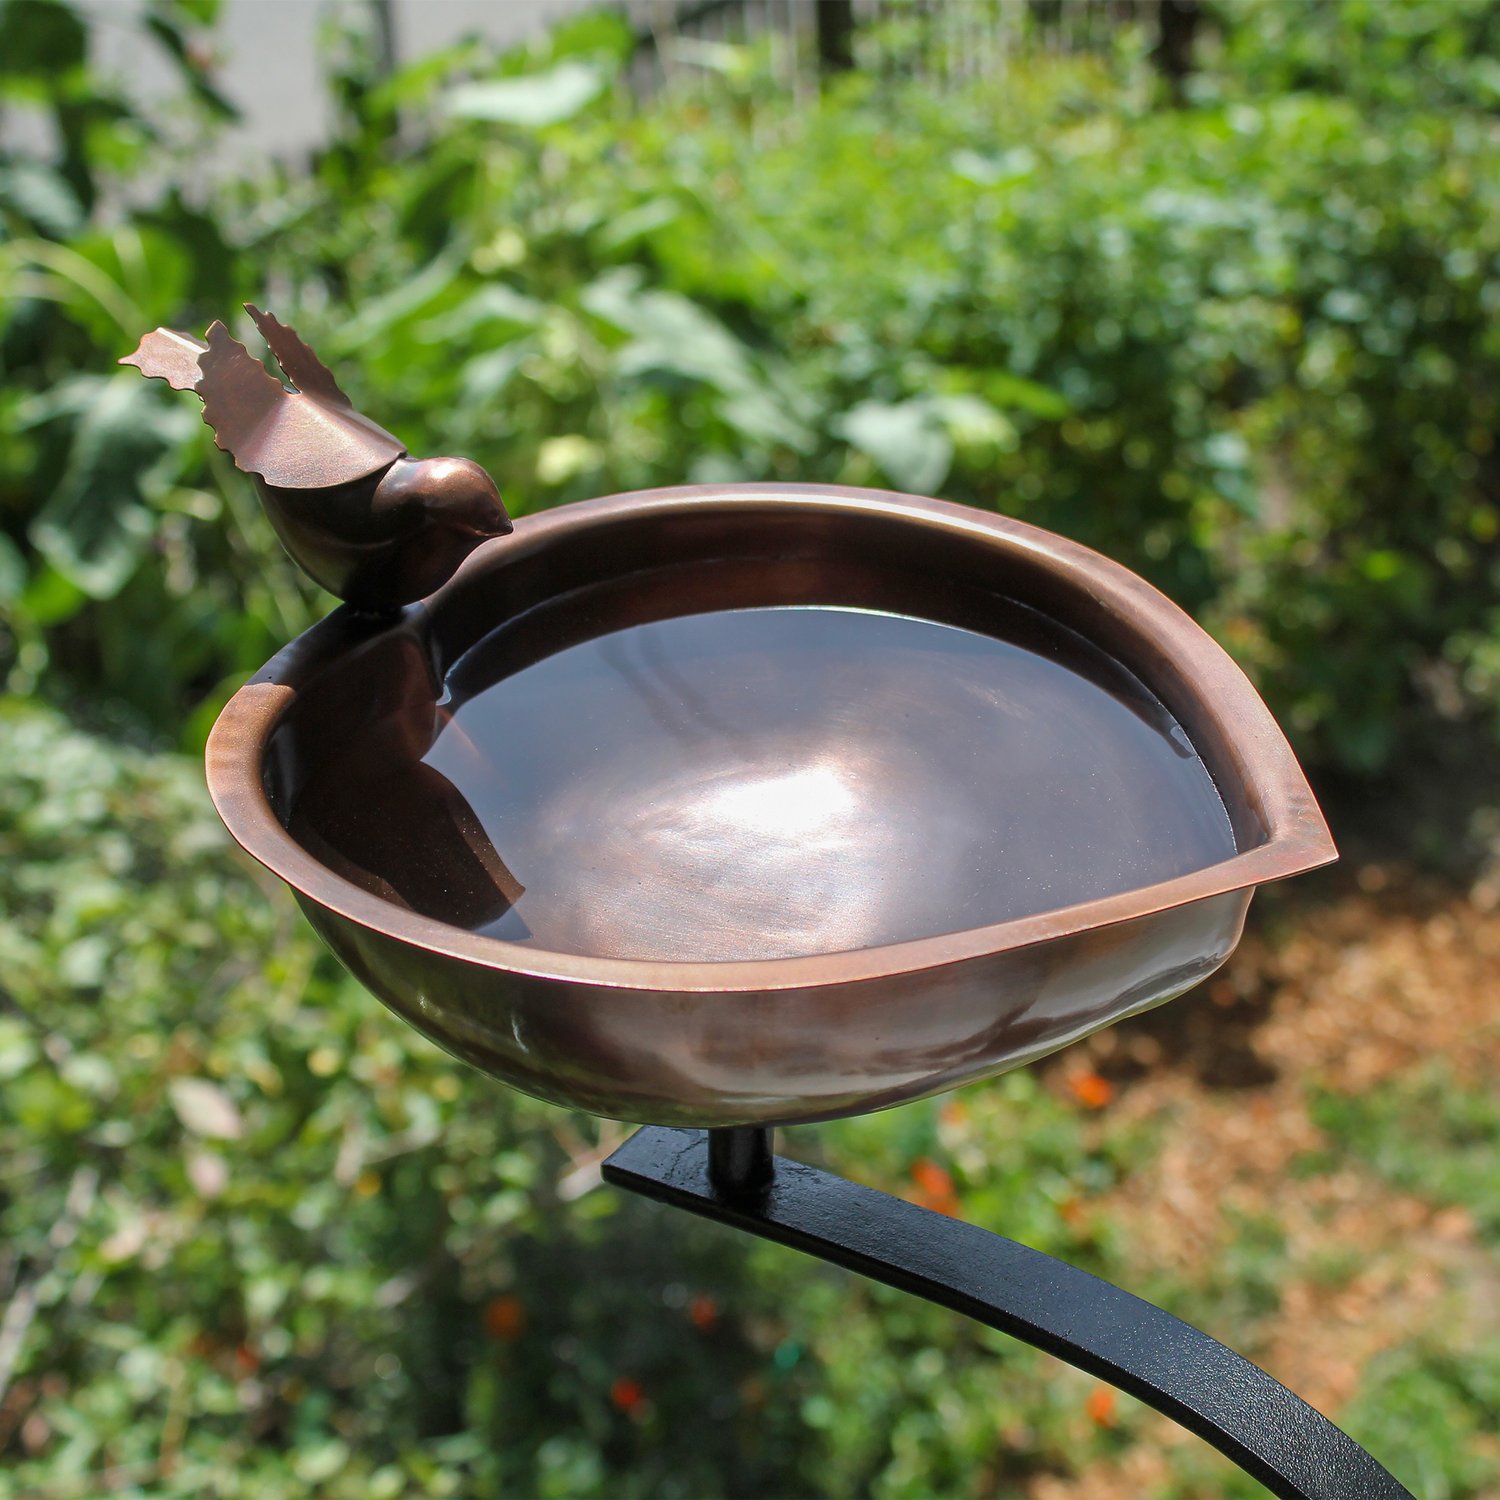 Achla Heart Shaped Bird Bath Bowl